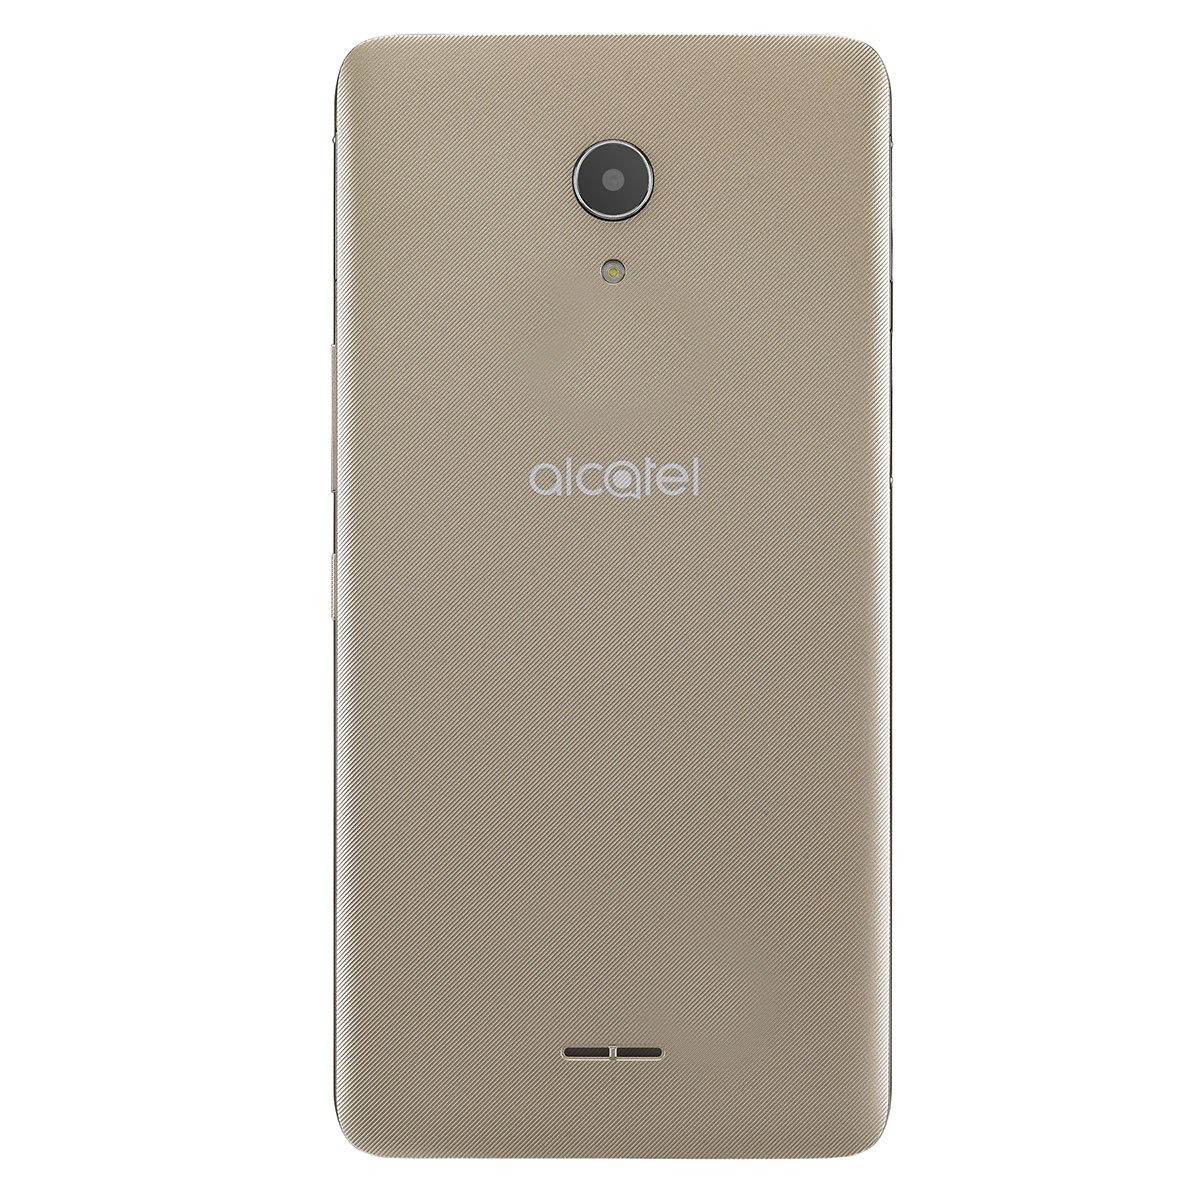 Celular Alcatel A3 Xl 9008 Color Dorado R9 (Telcel)